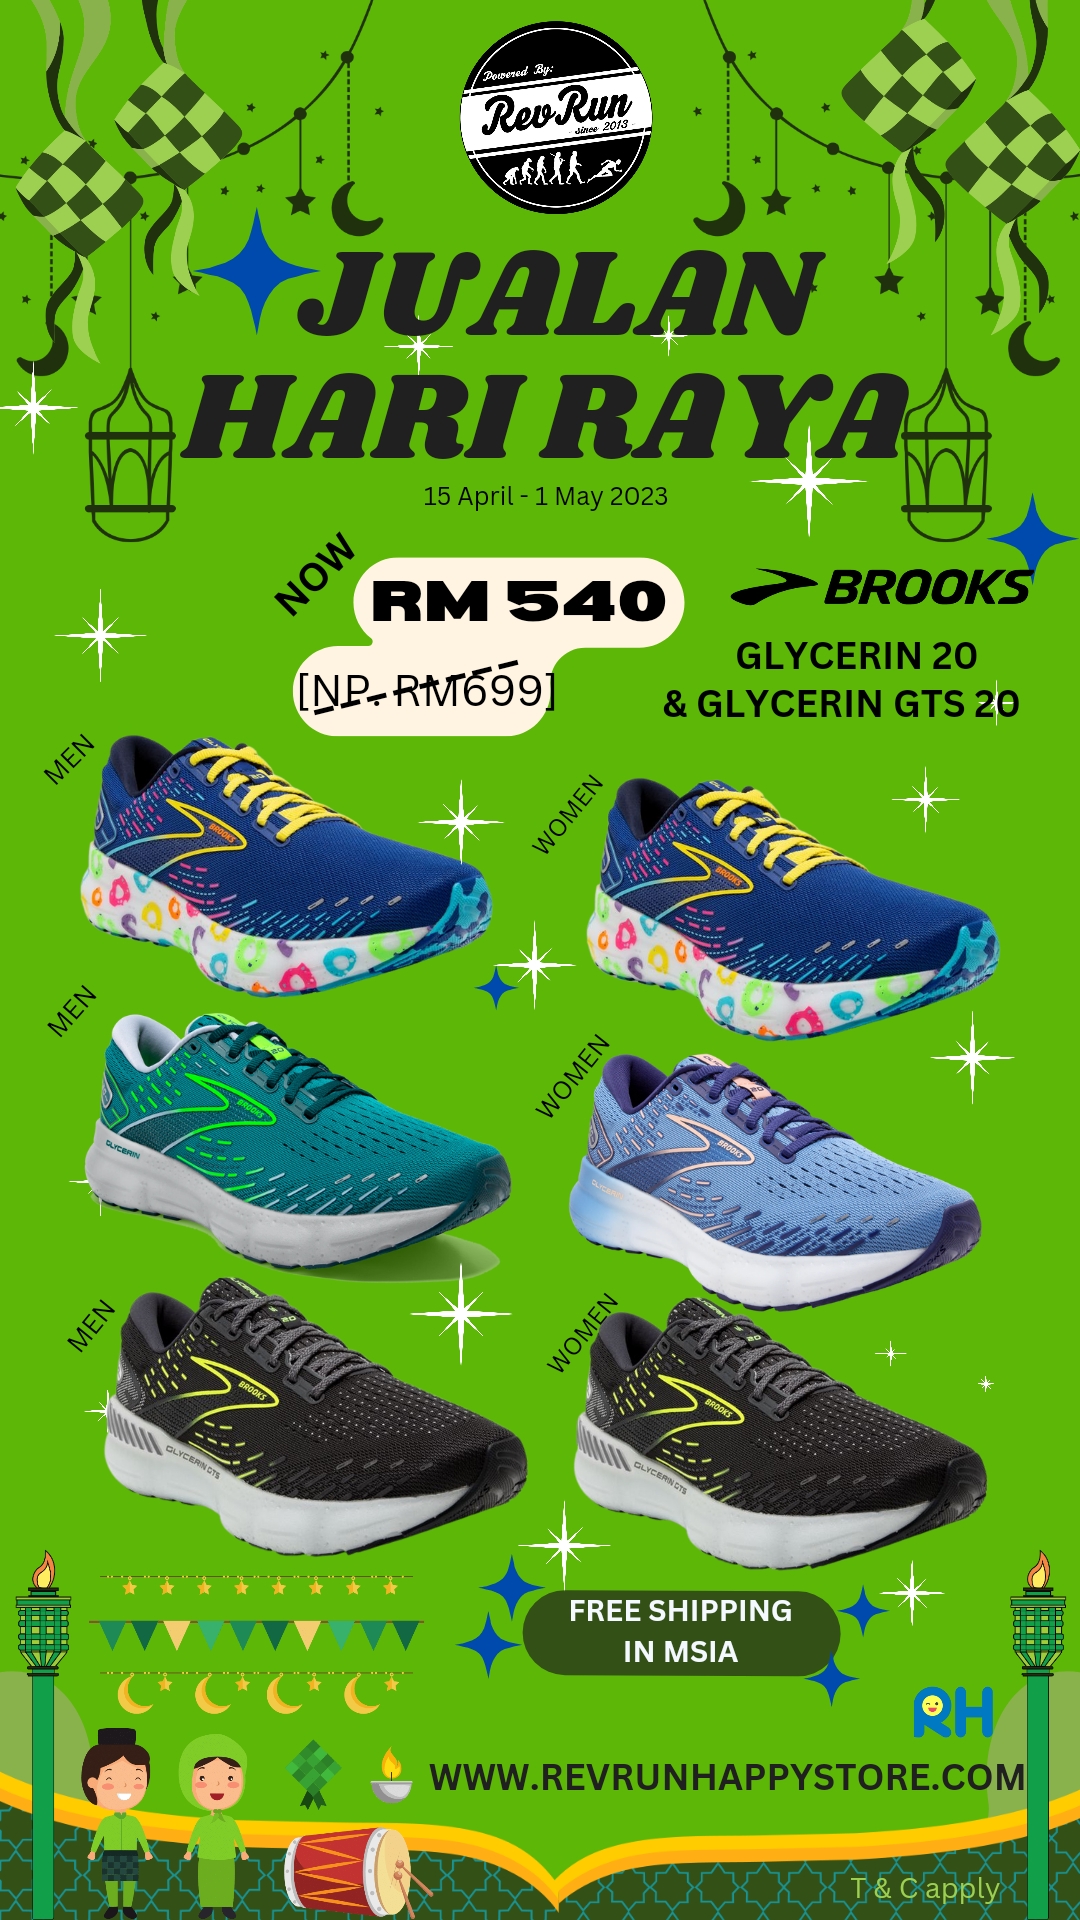 Run Happy Store | Revolution Run Borneo, Malaysia